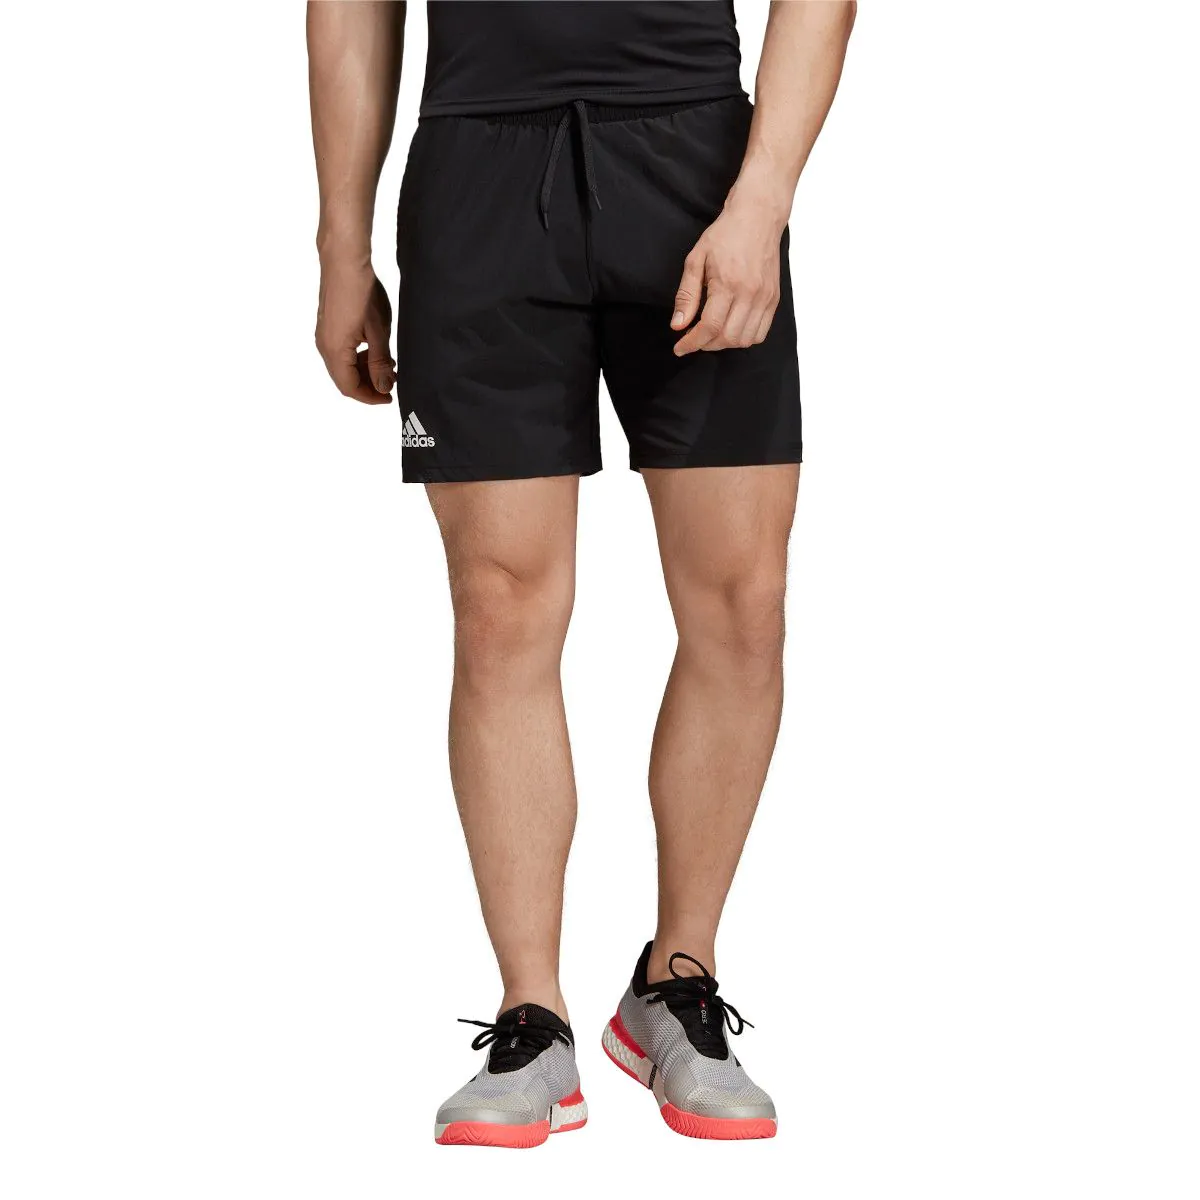 Adidas Club SW short. Шорты adidas Melbourne Tennis Ergo Printed. Adidas 7 inch Tennis shorts. Шорты адидас Club.